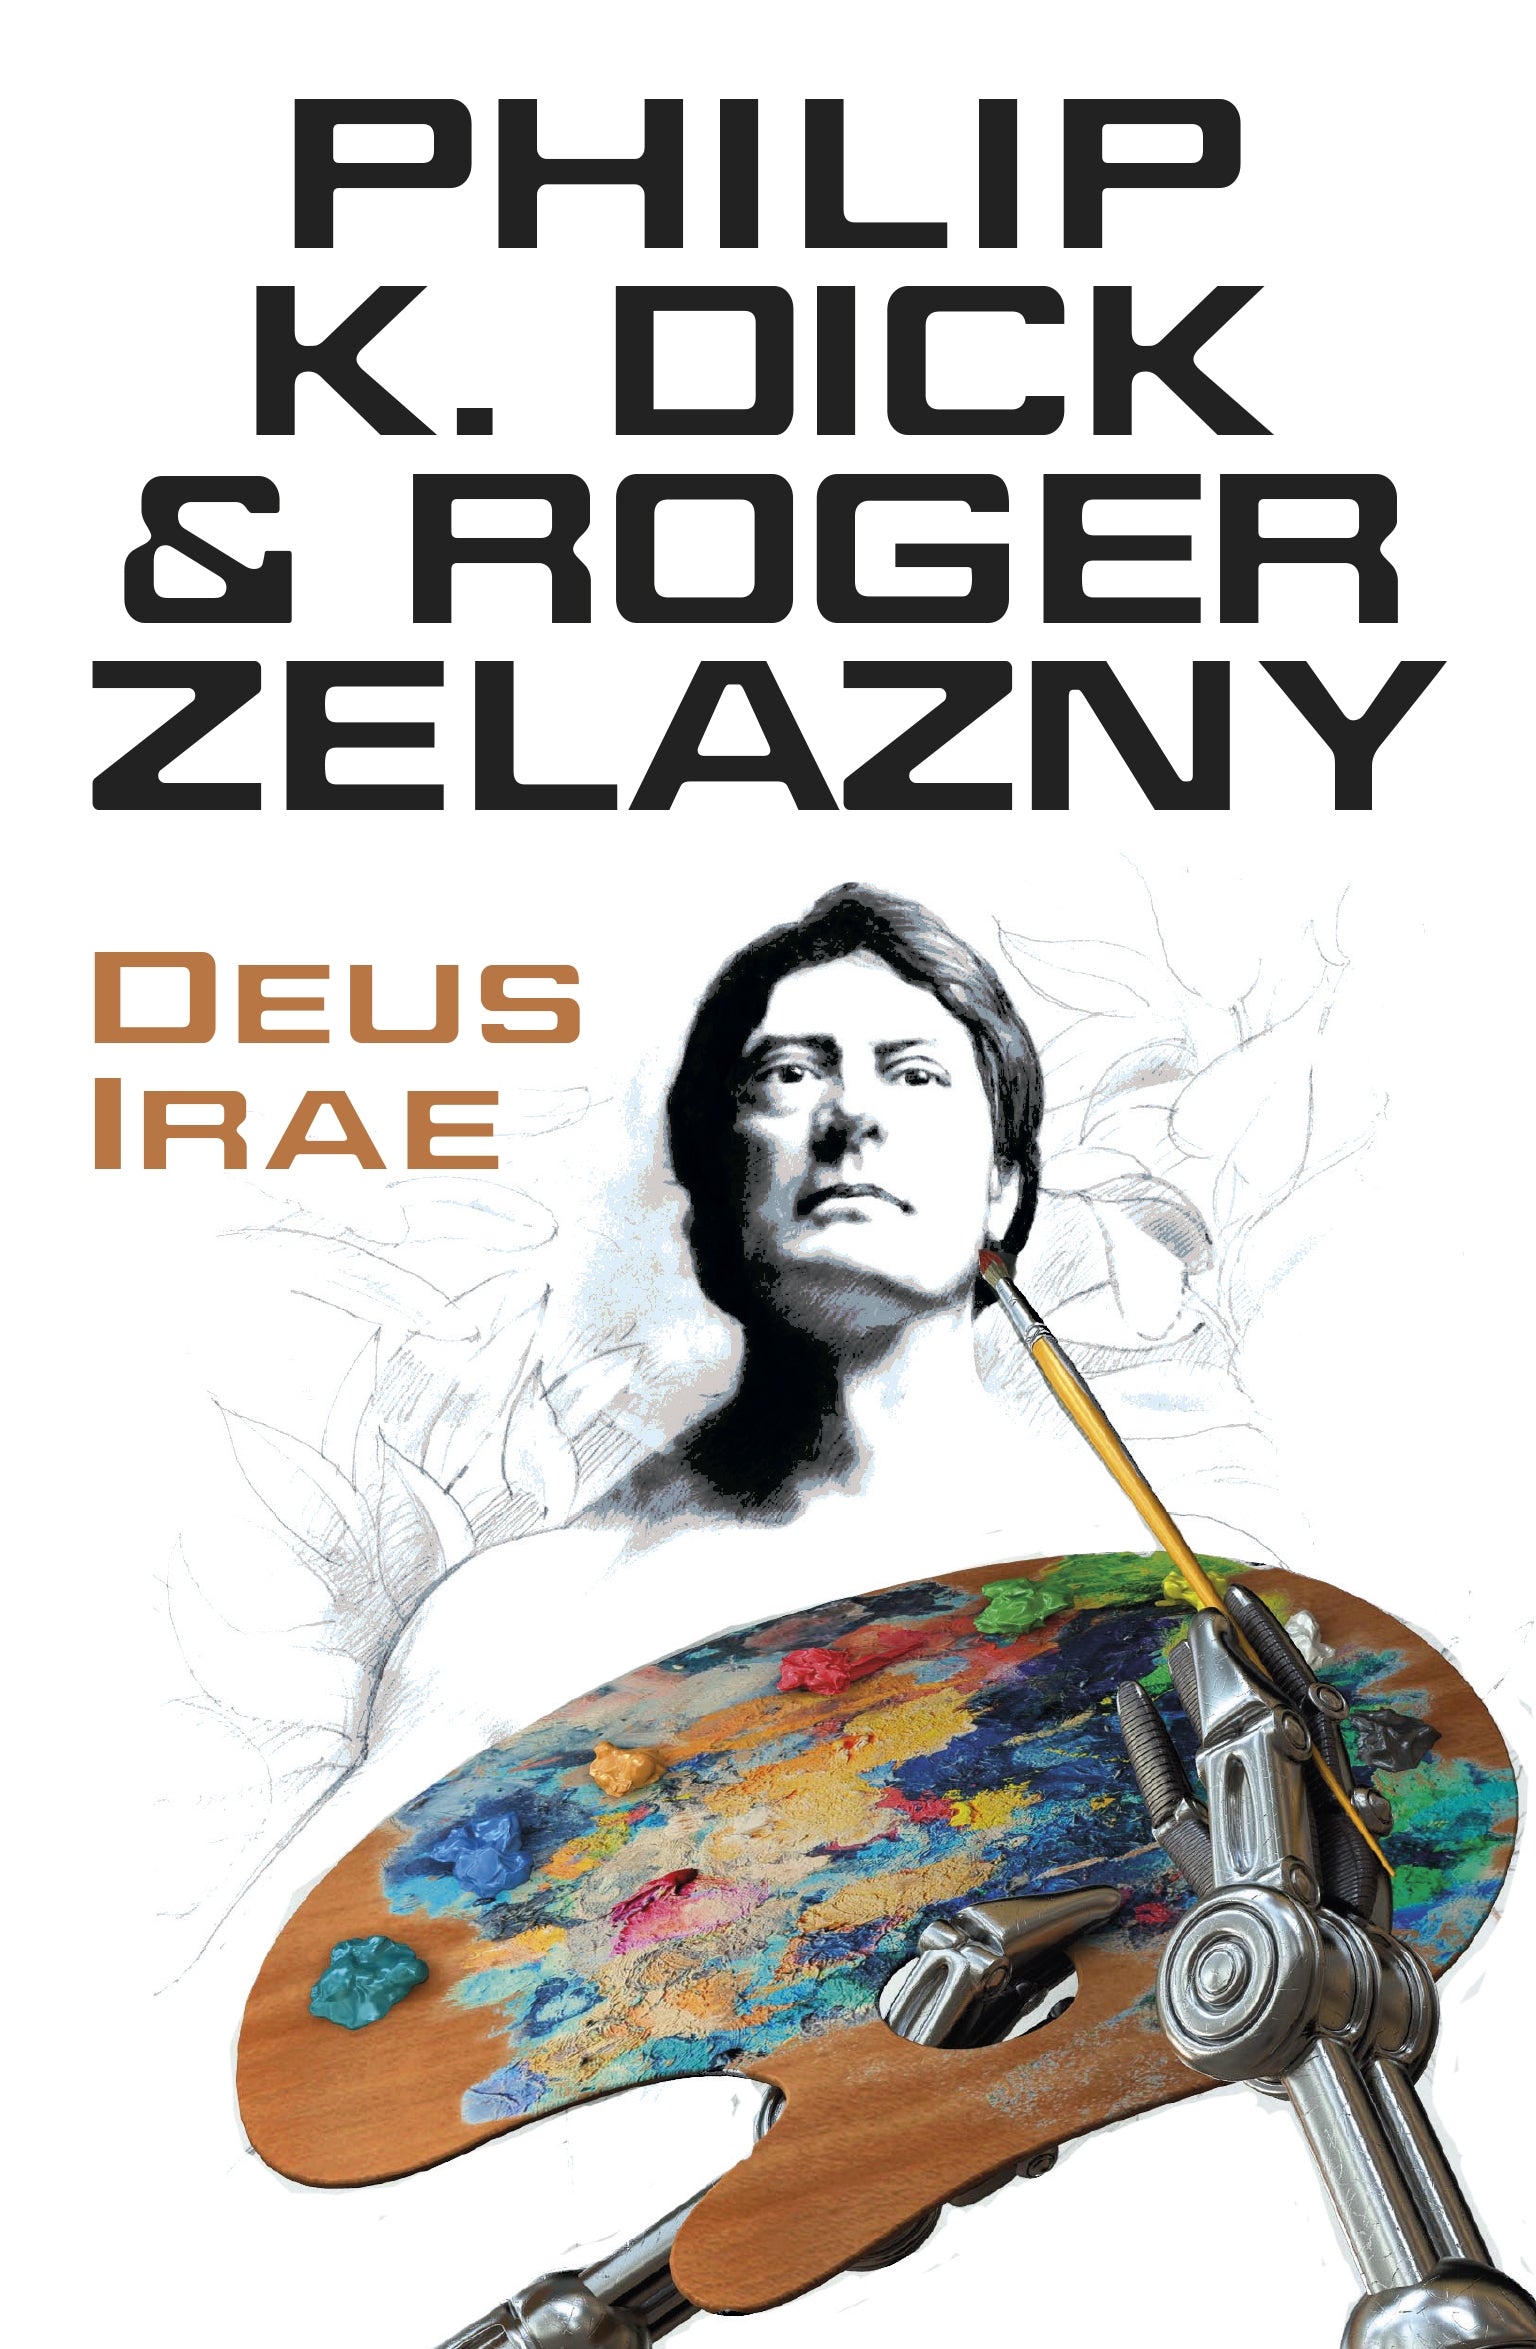 Deus Irae by Philip K Dick, Roger Zelazny